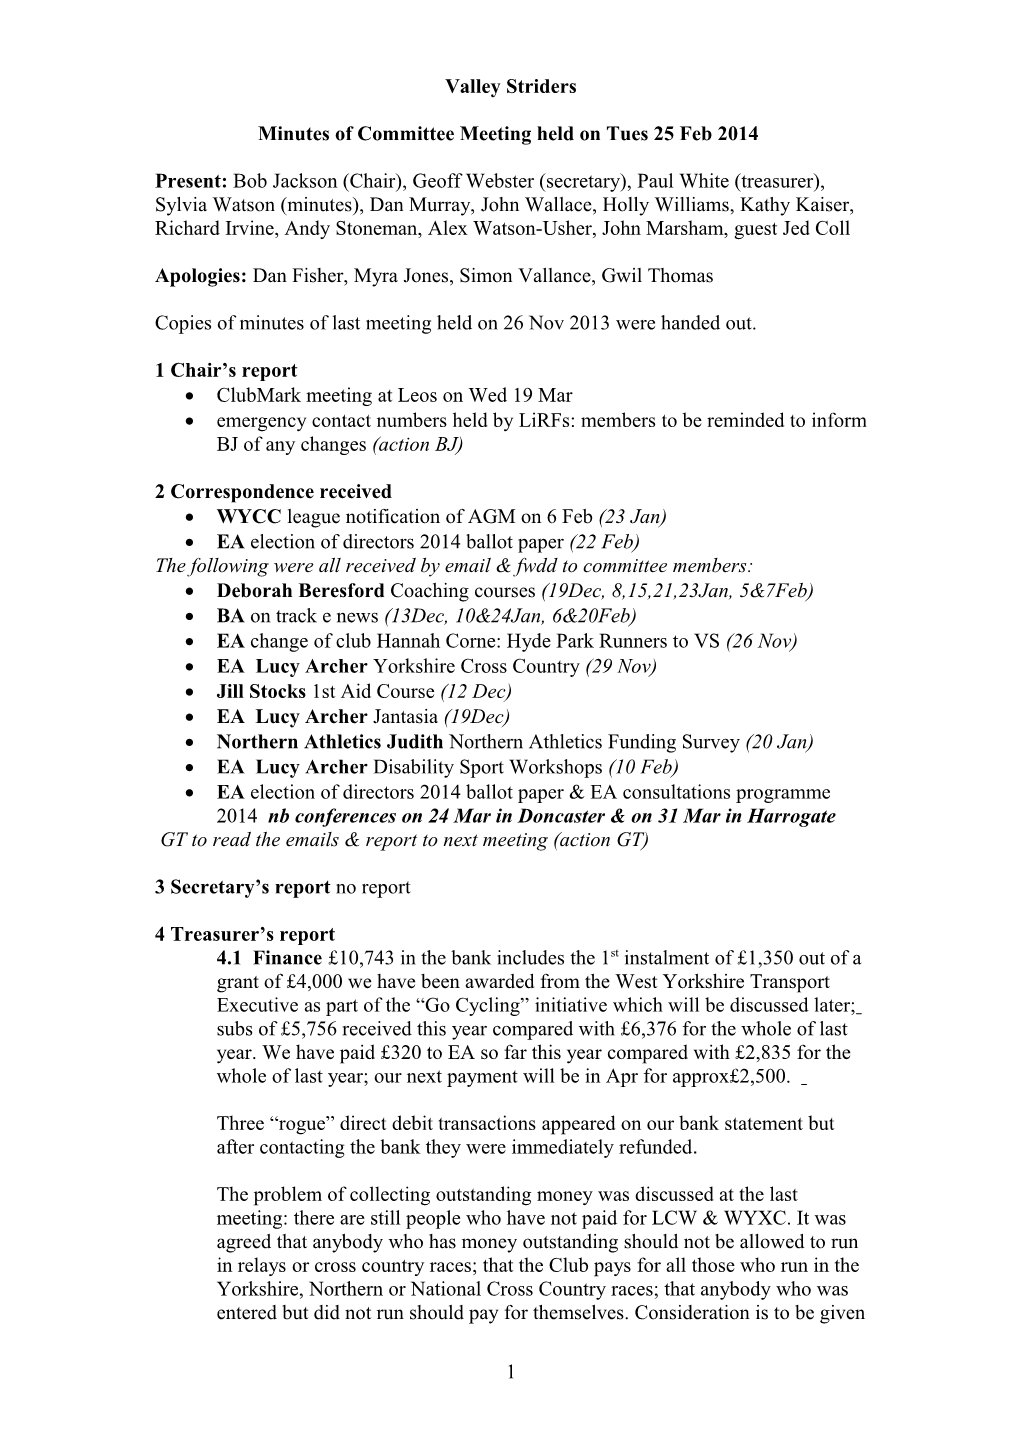 Minutes of Committee Meeting Held on Tues 25 Feb 2014